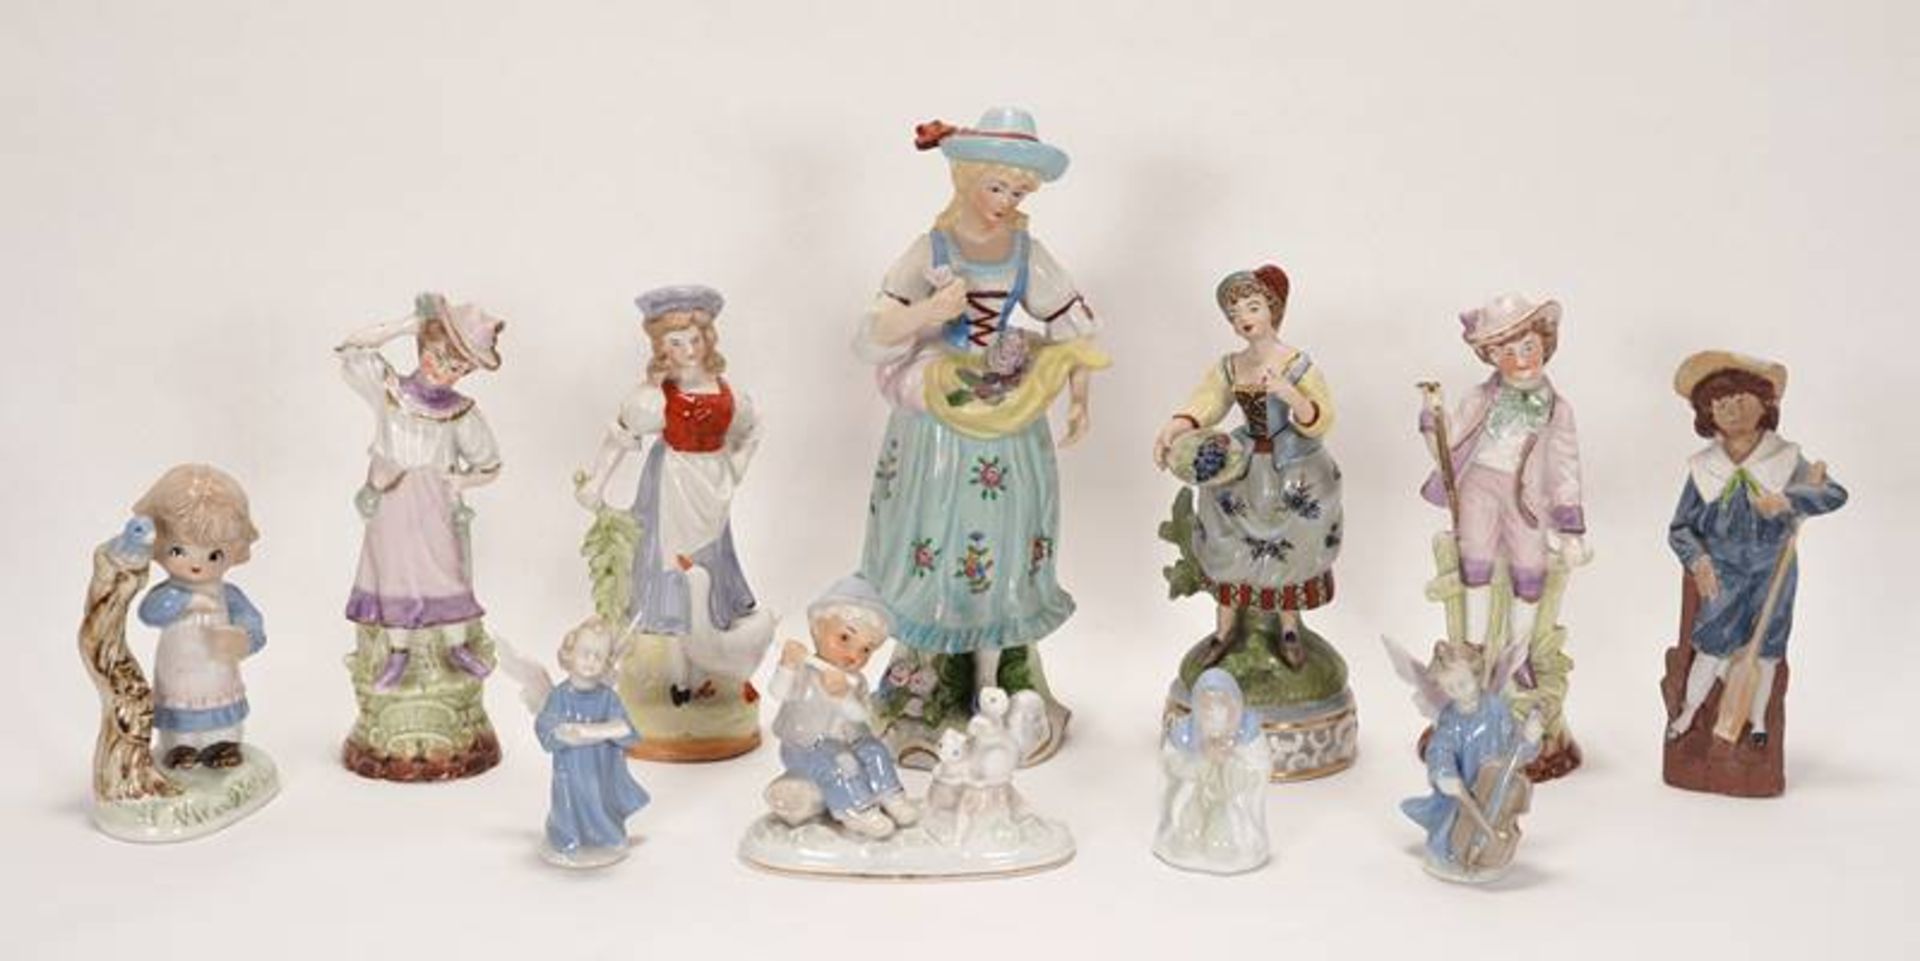 11 various porcelain figures